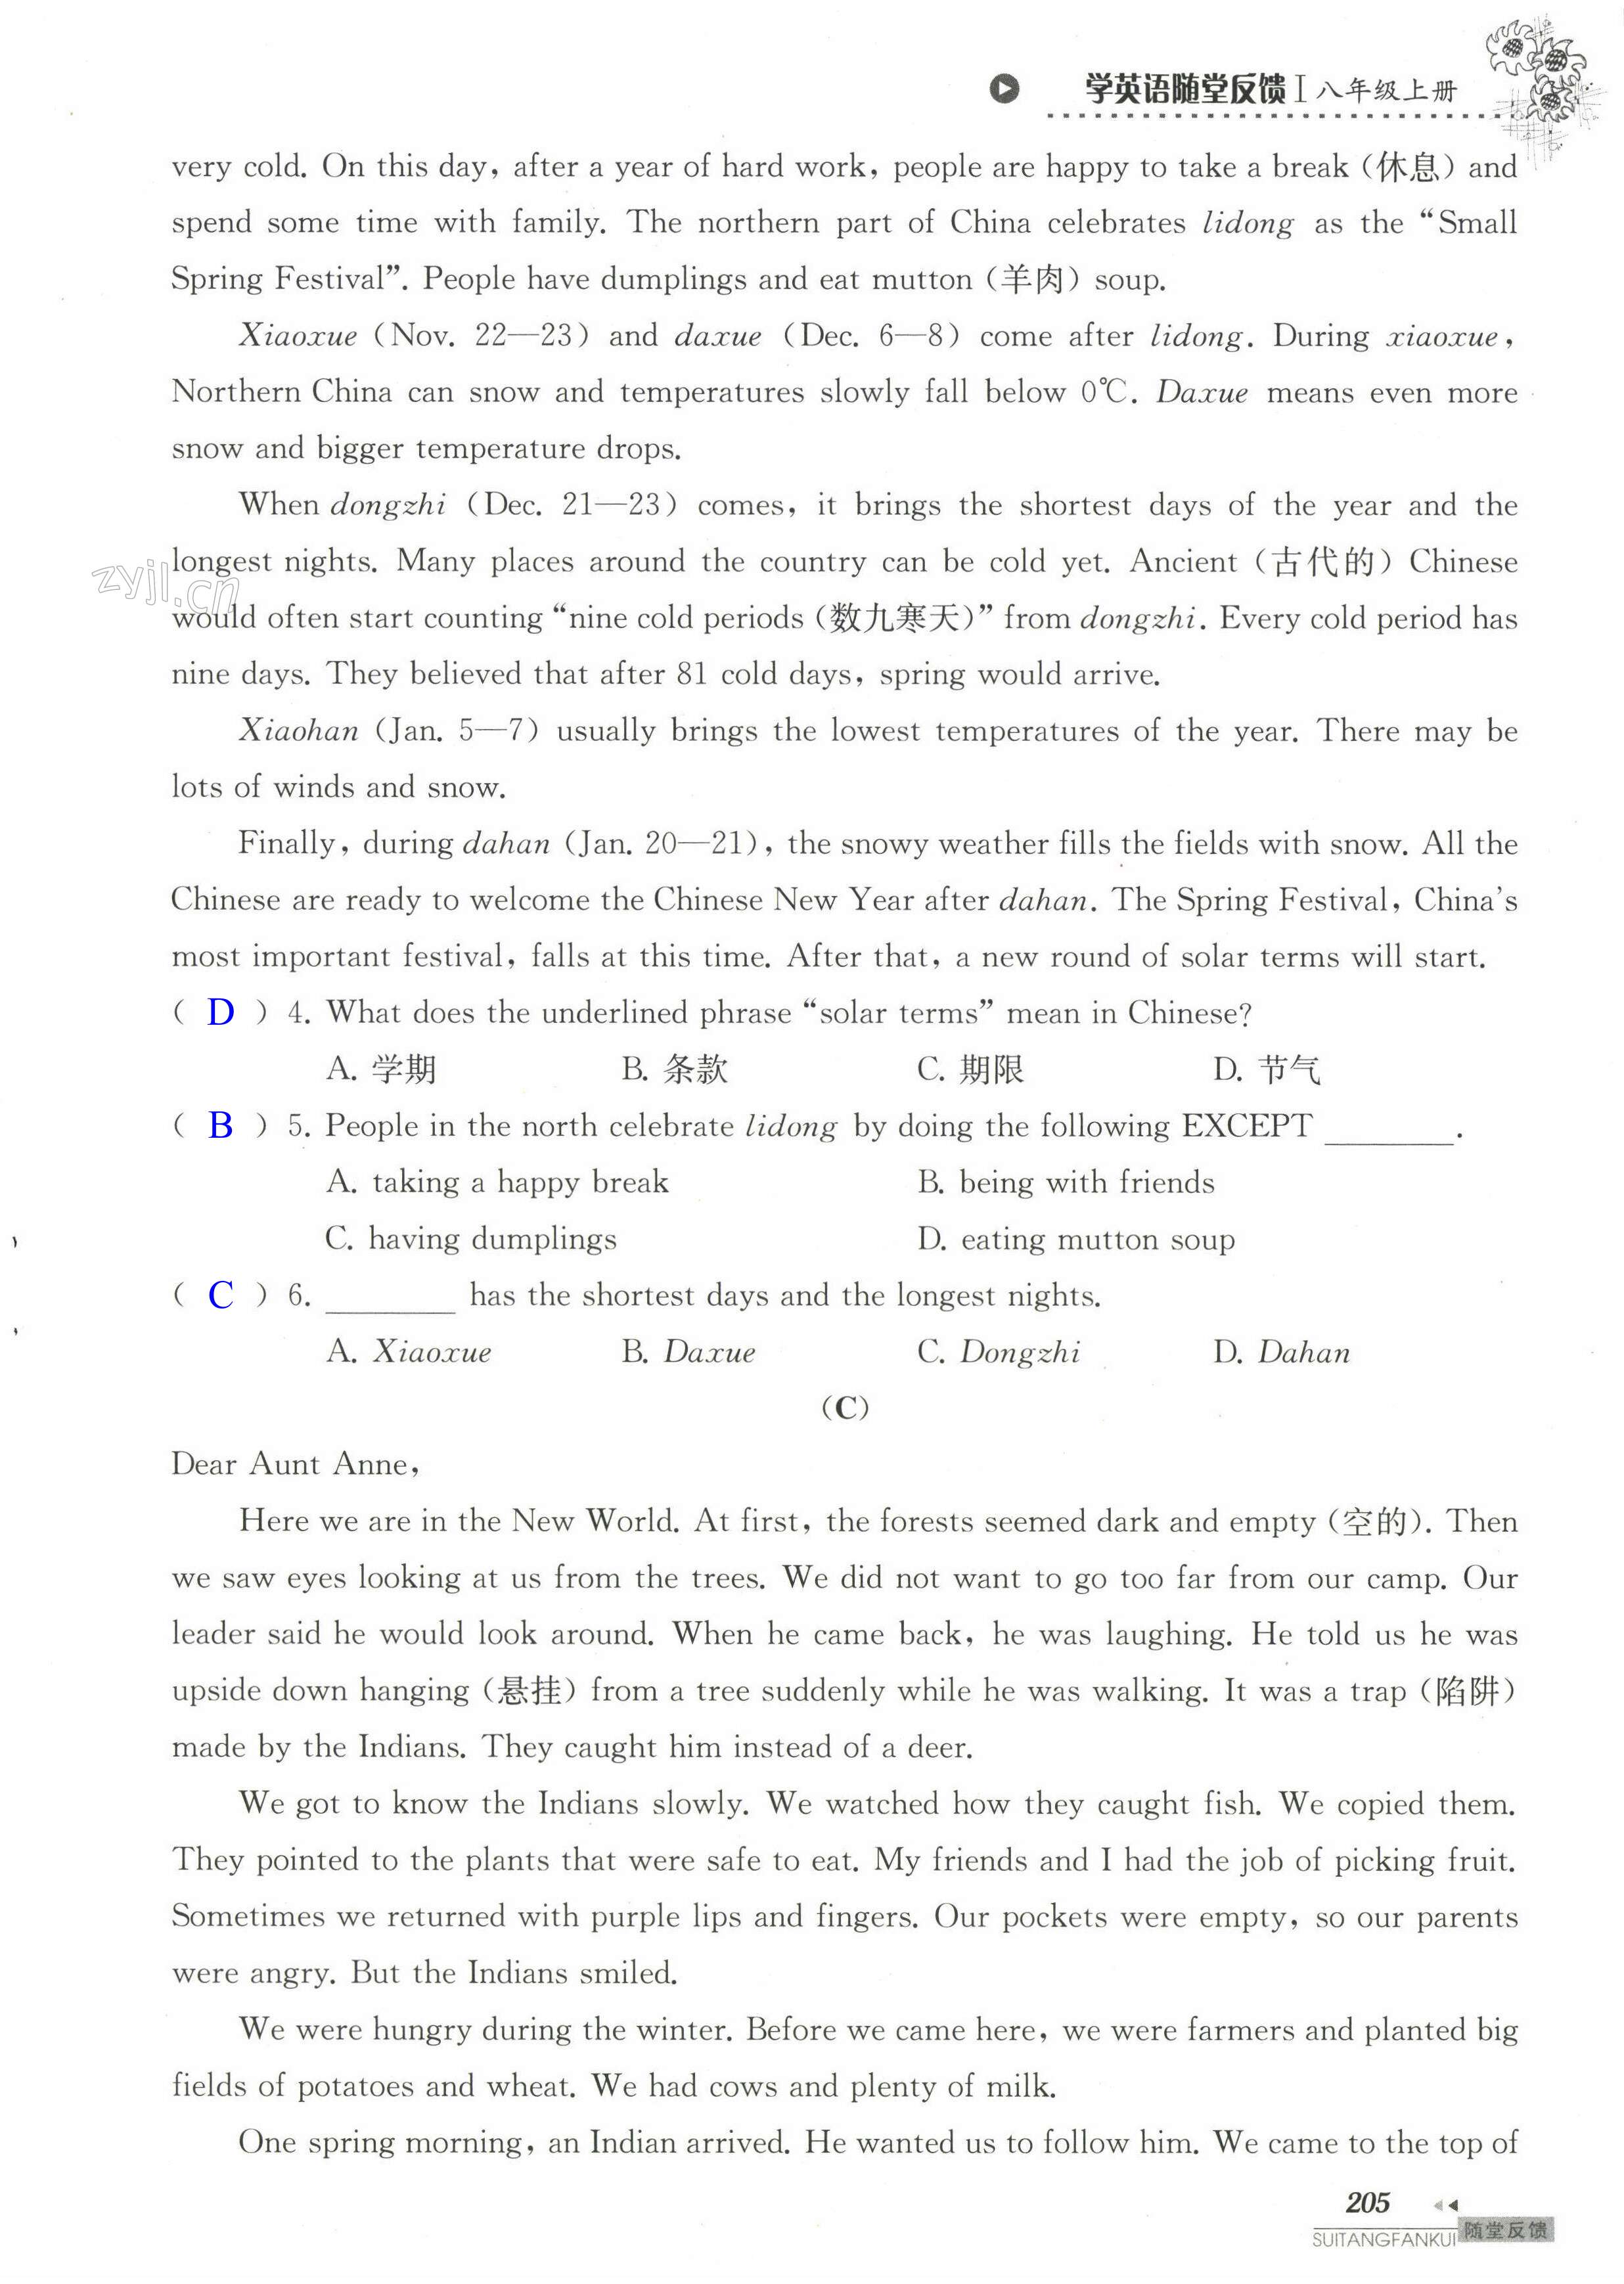 单元综合测试卷 Test for Unit 7 of 8A - 第205页